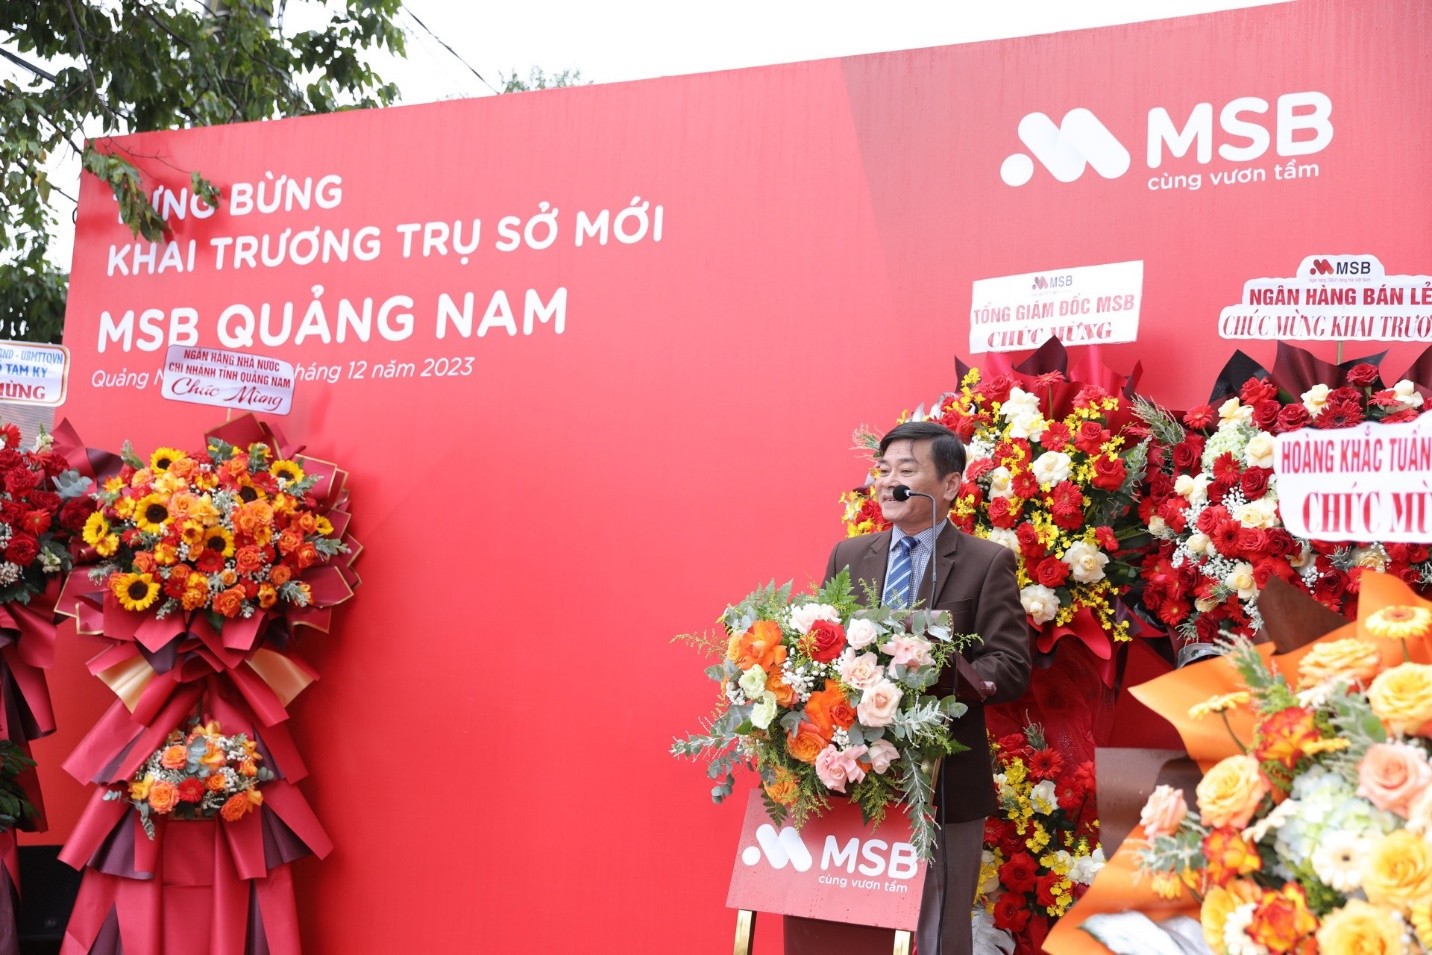 MSB Chi nhánh Quảng Nam khai trương địa điểm mới